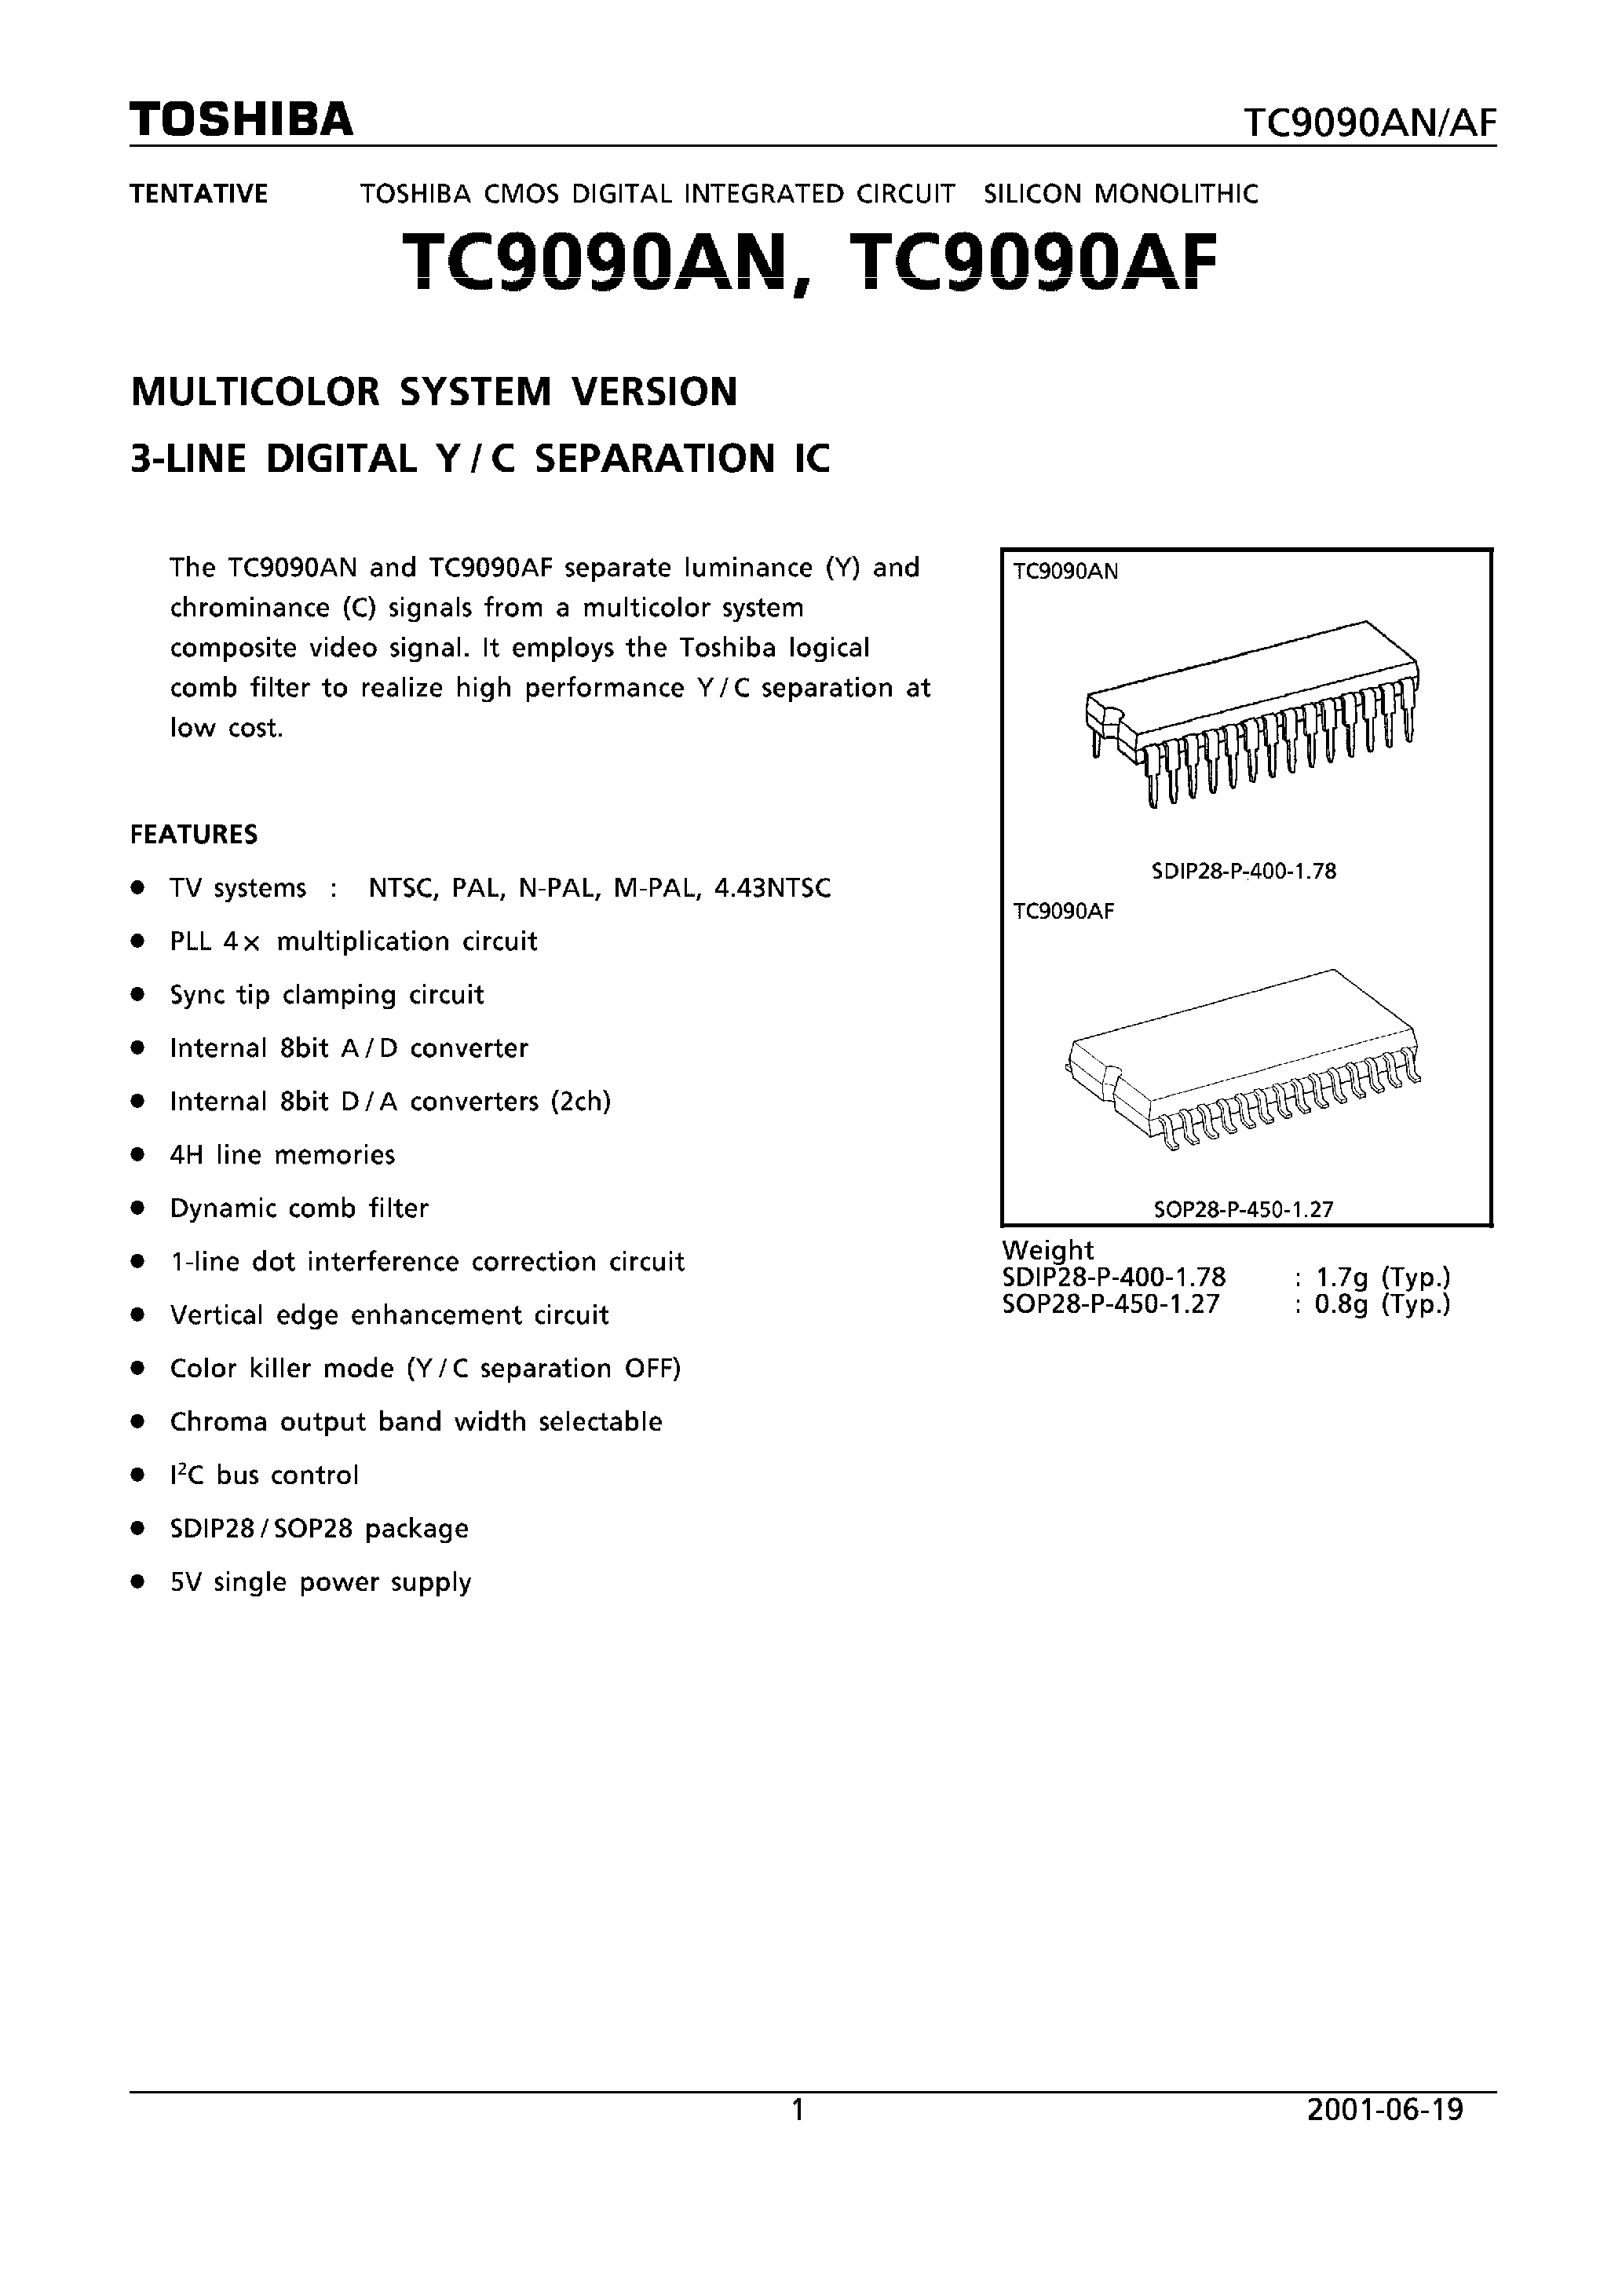 Datasheet TC9090AF - MULTICOLOR SYSTEM VERSION 3 LINE DIGITAL Y/C SEPARATION IC page 1